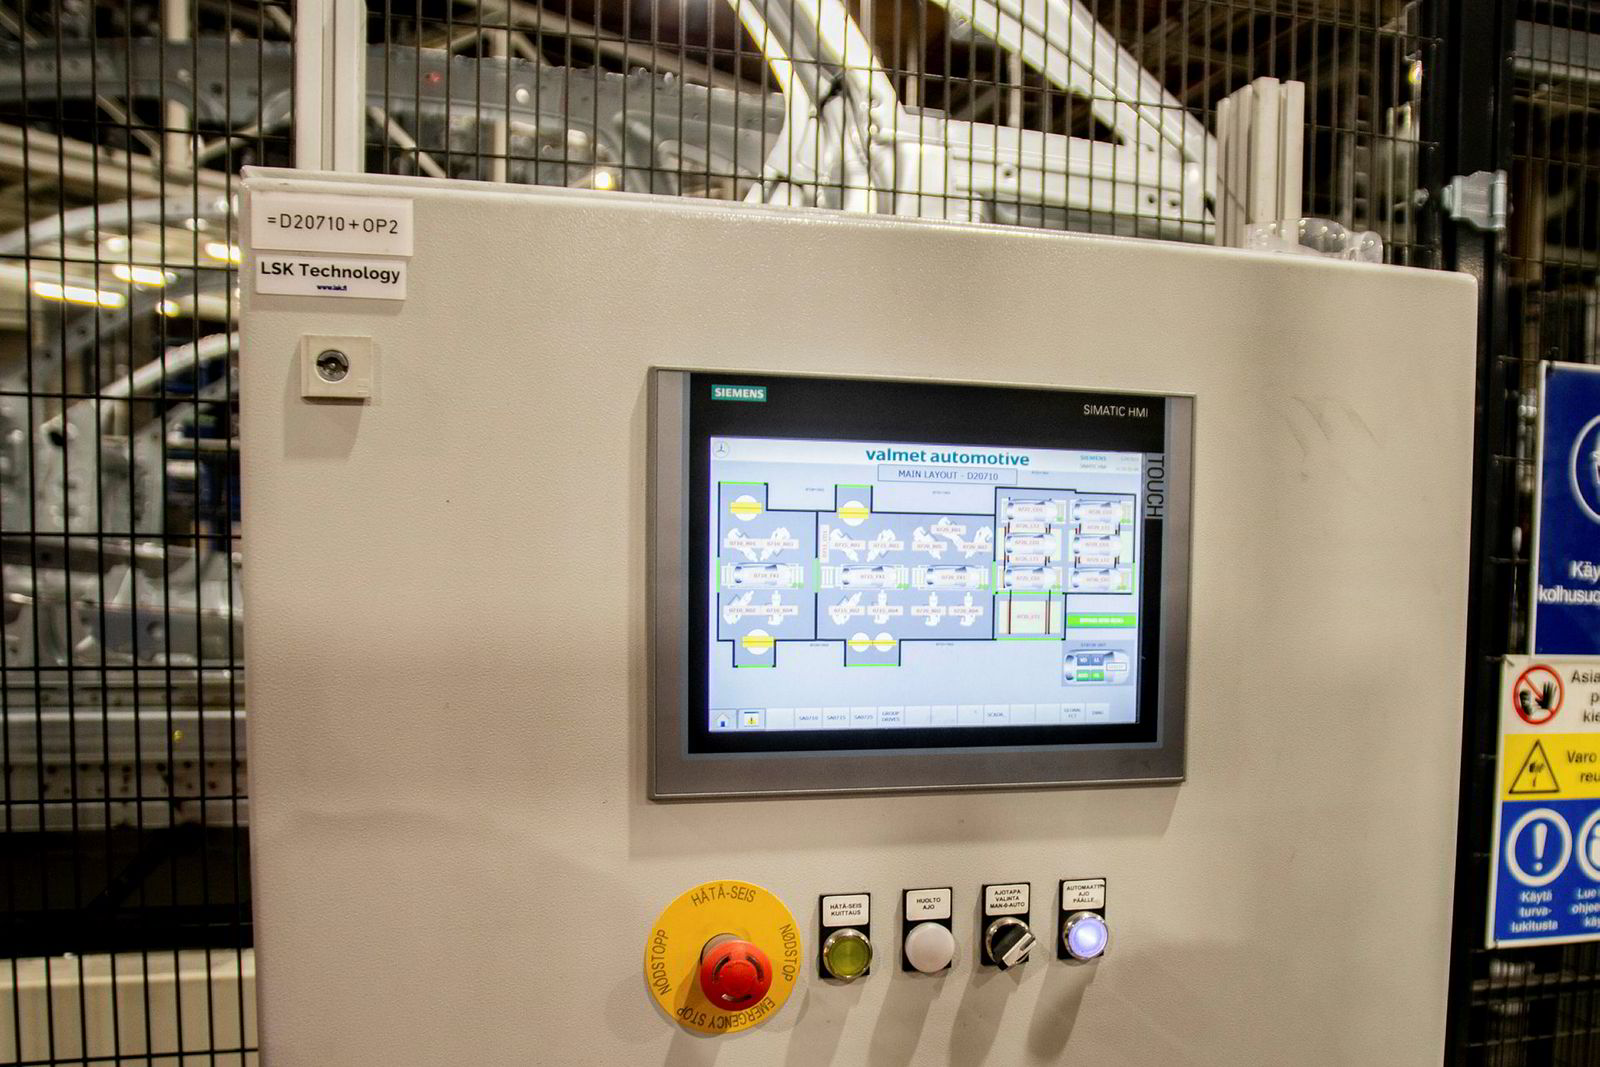 Overvåkningen av produksjonen som blir gjort av brukergrensesnitt-panelet for kontrollsystemet basert på Siemens' TIA-portal er essensiell for å raskt få rettet opp feil i produksjonen.